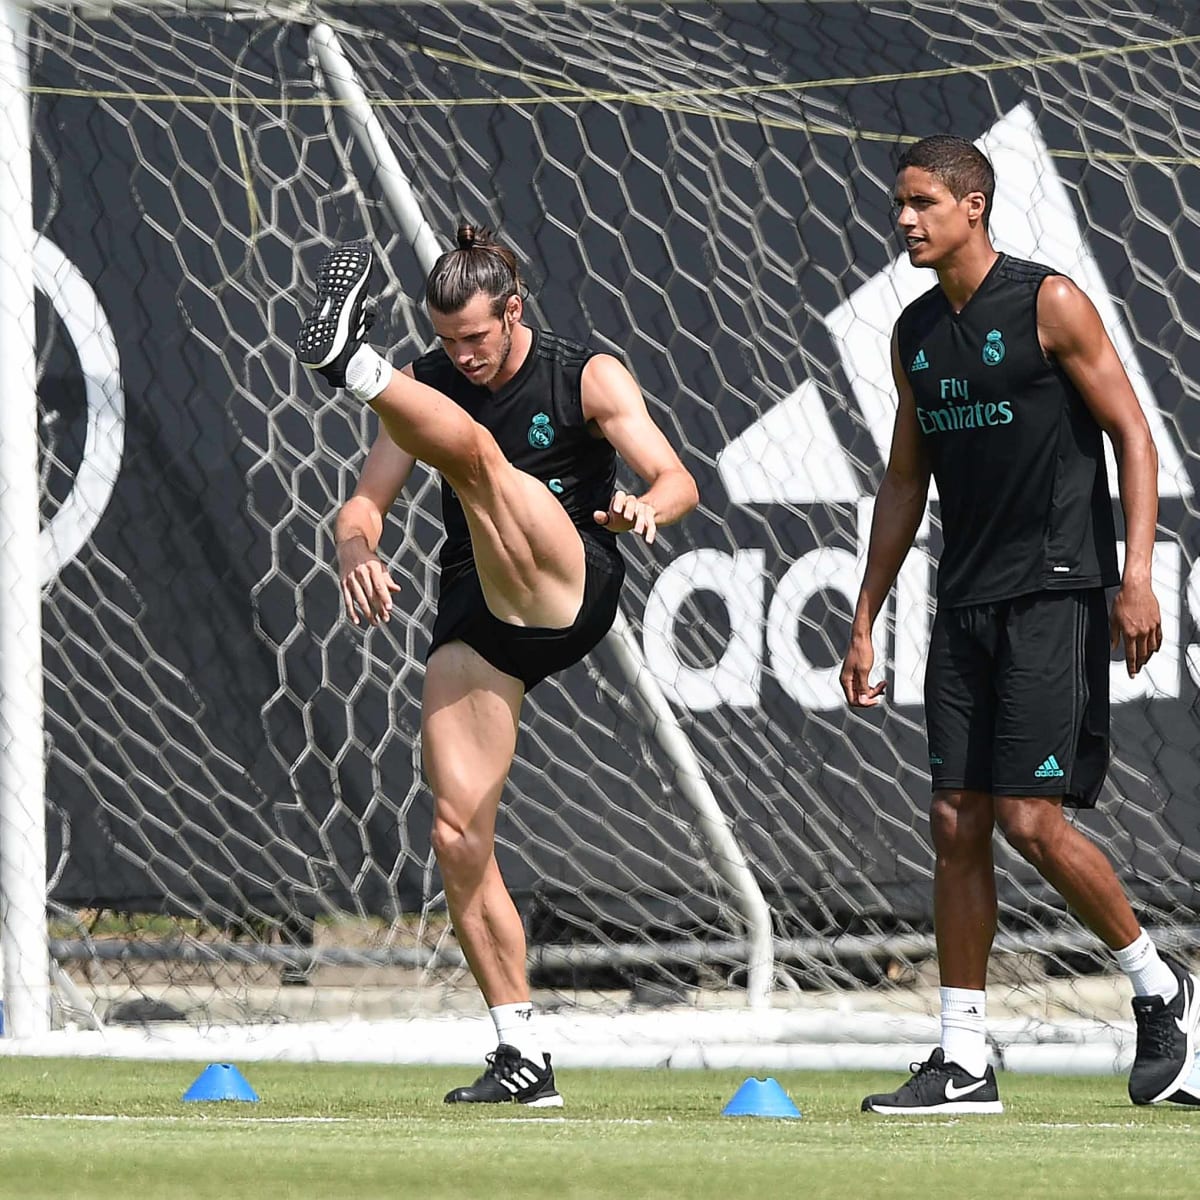 Real Madrid Star Gareth Bale's Legs Look Jacked - Men's Journal